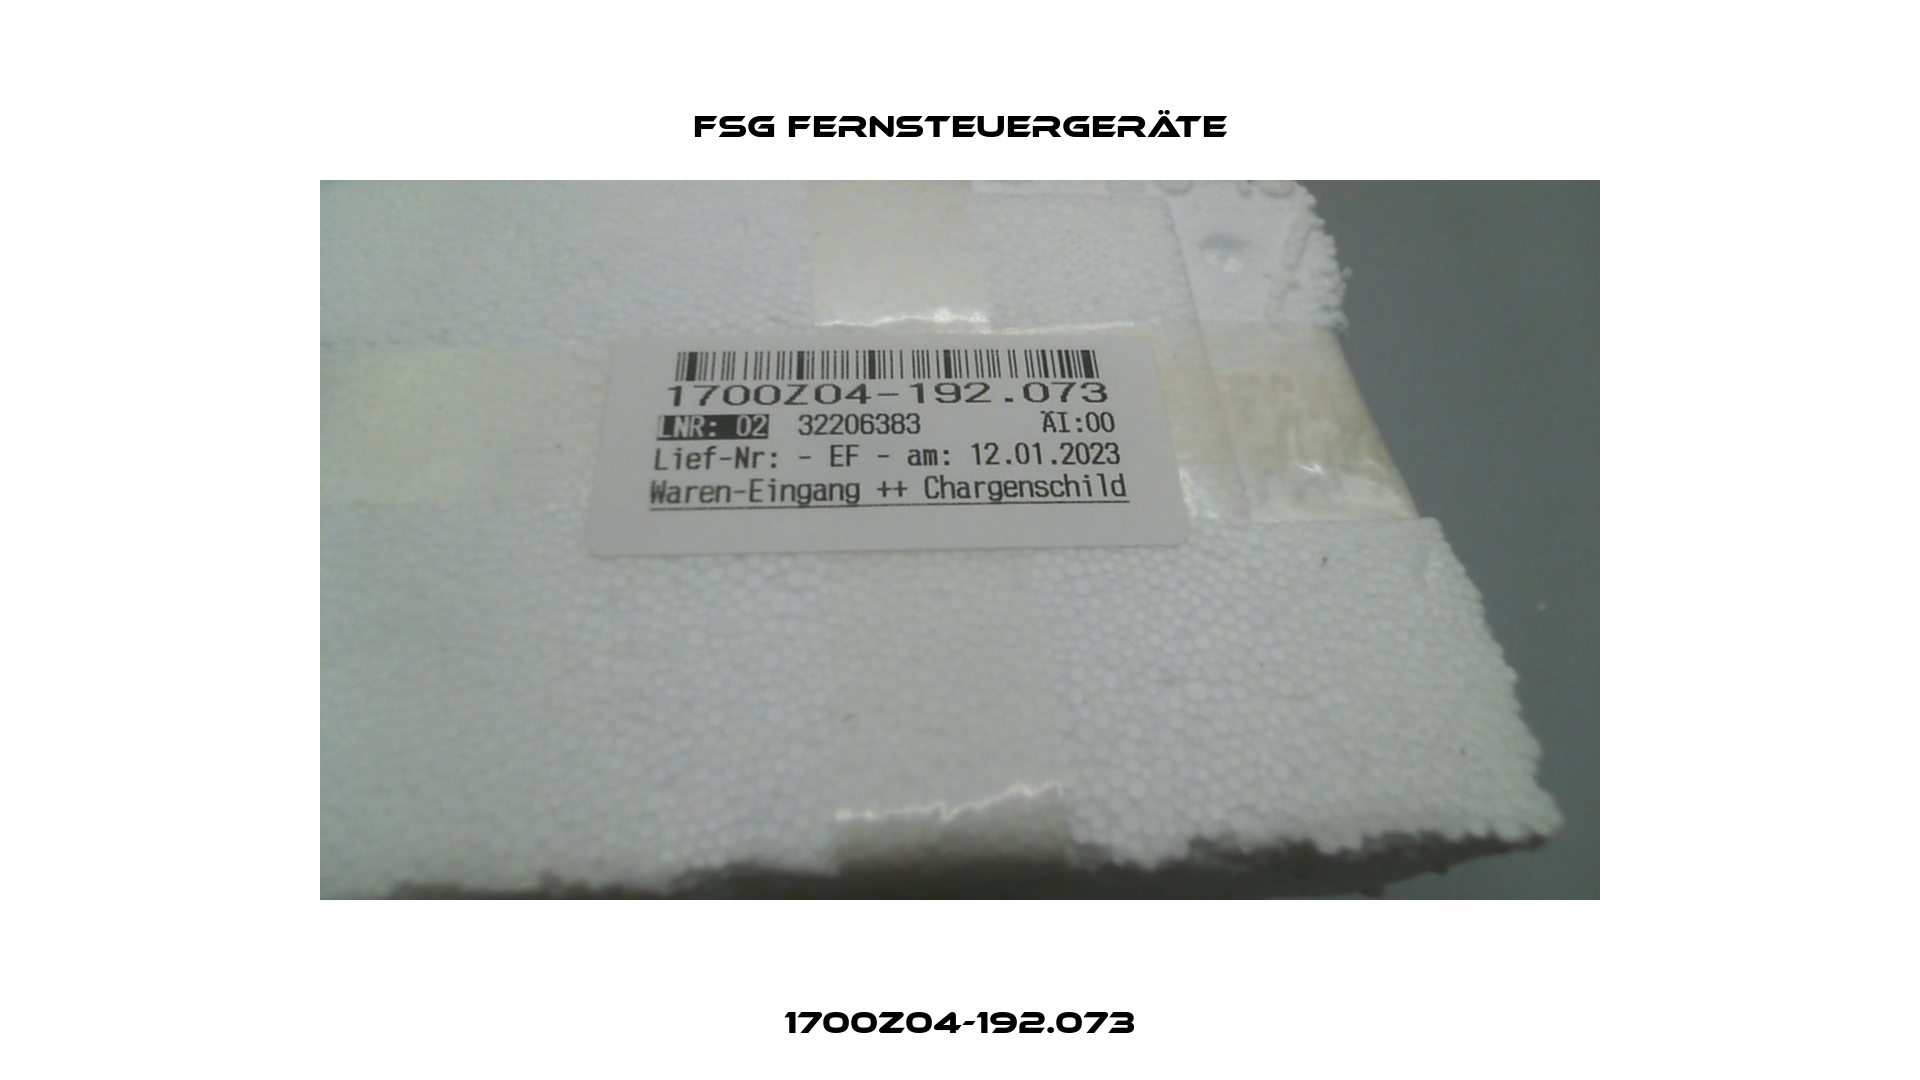 1700Z04-192.073 FSG Fernsteuergeräte